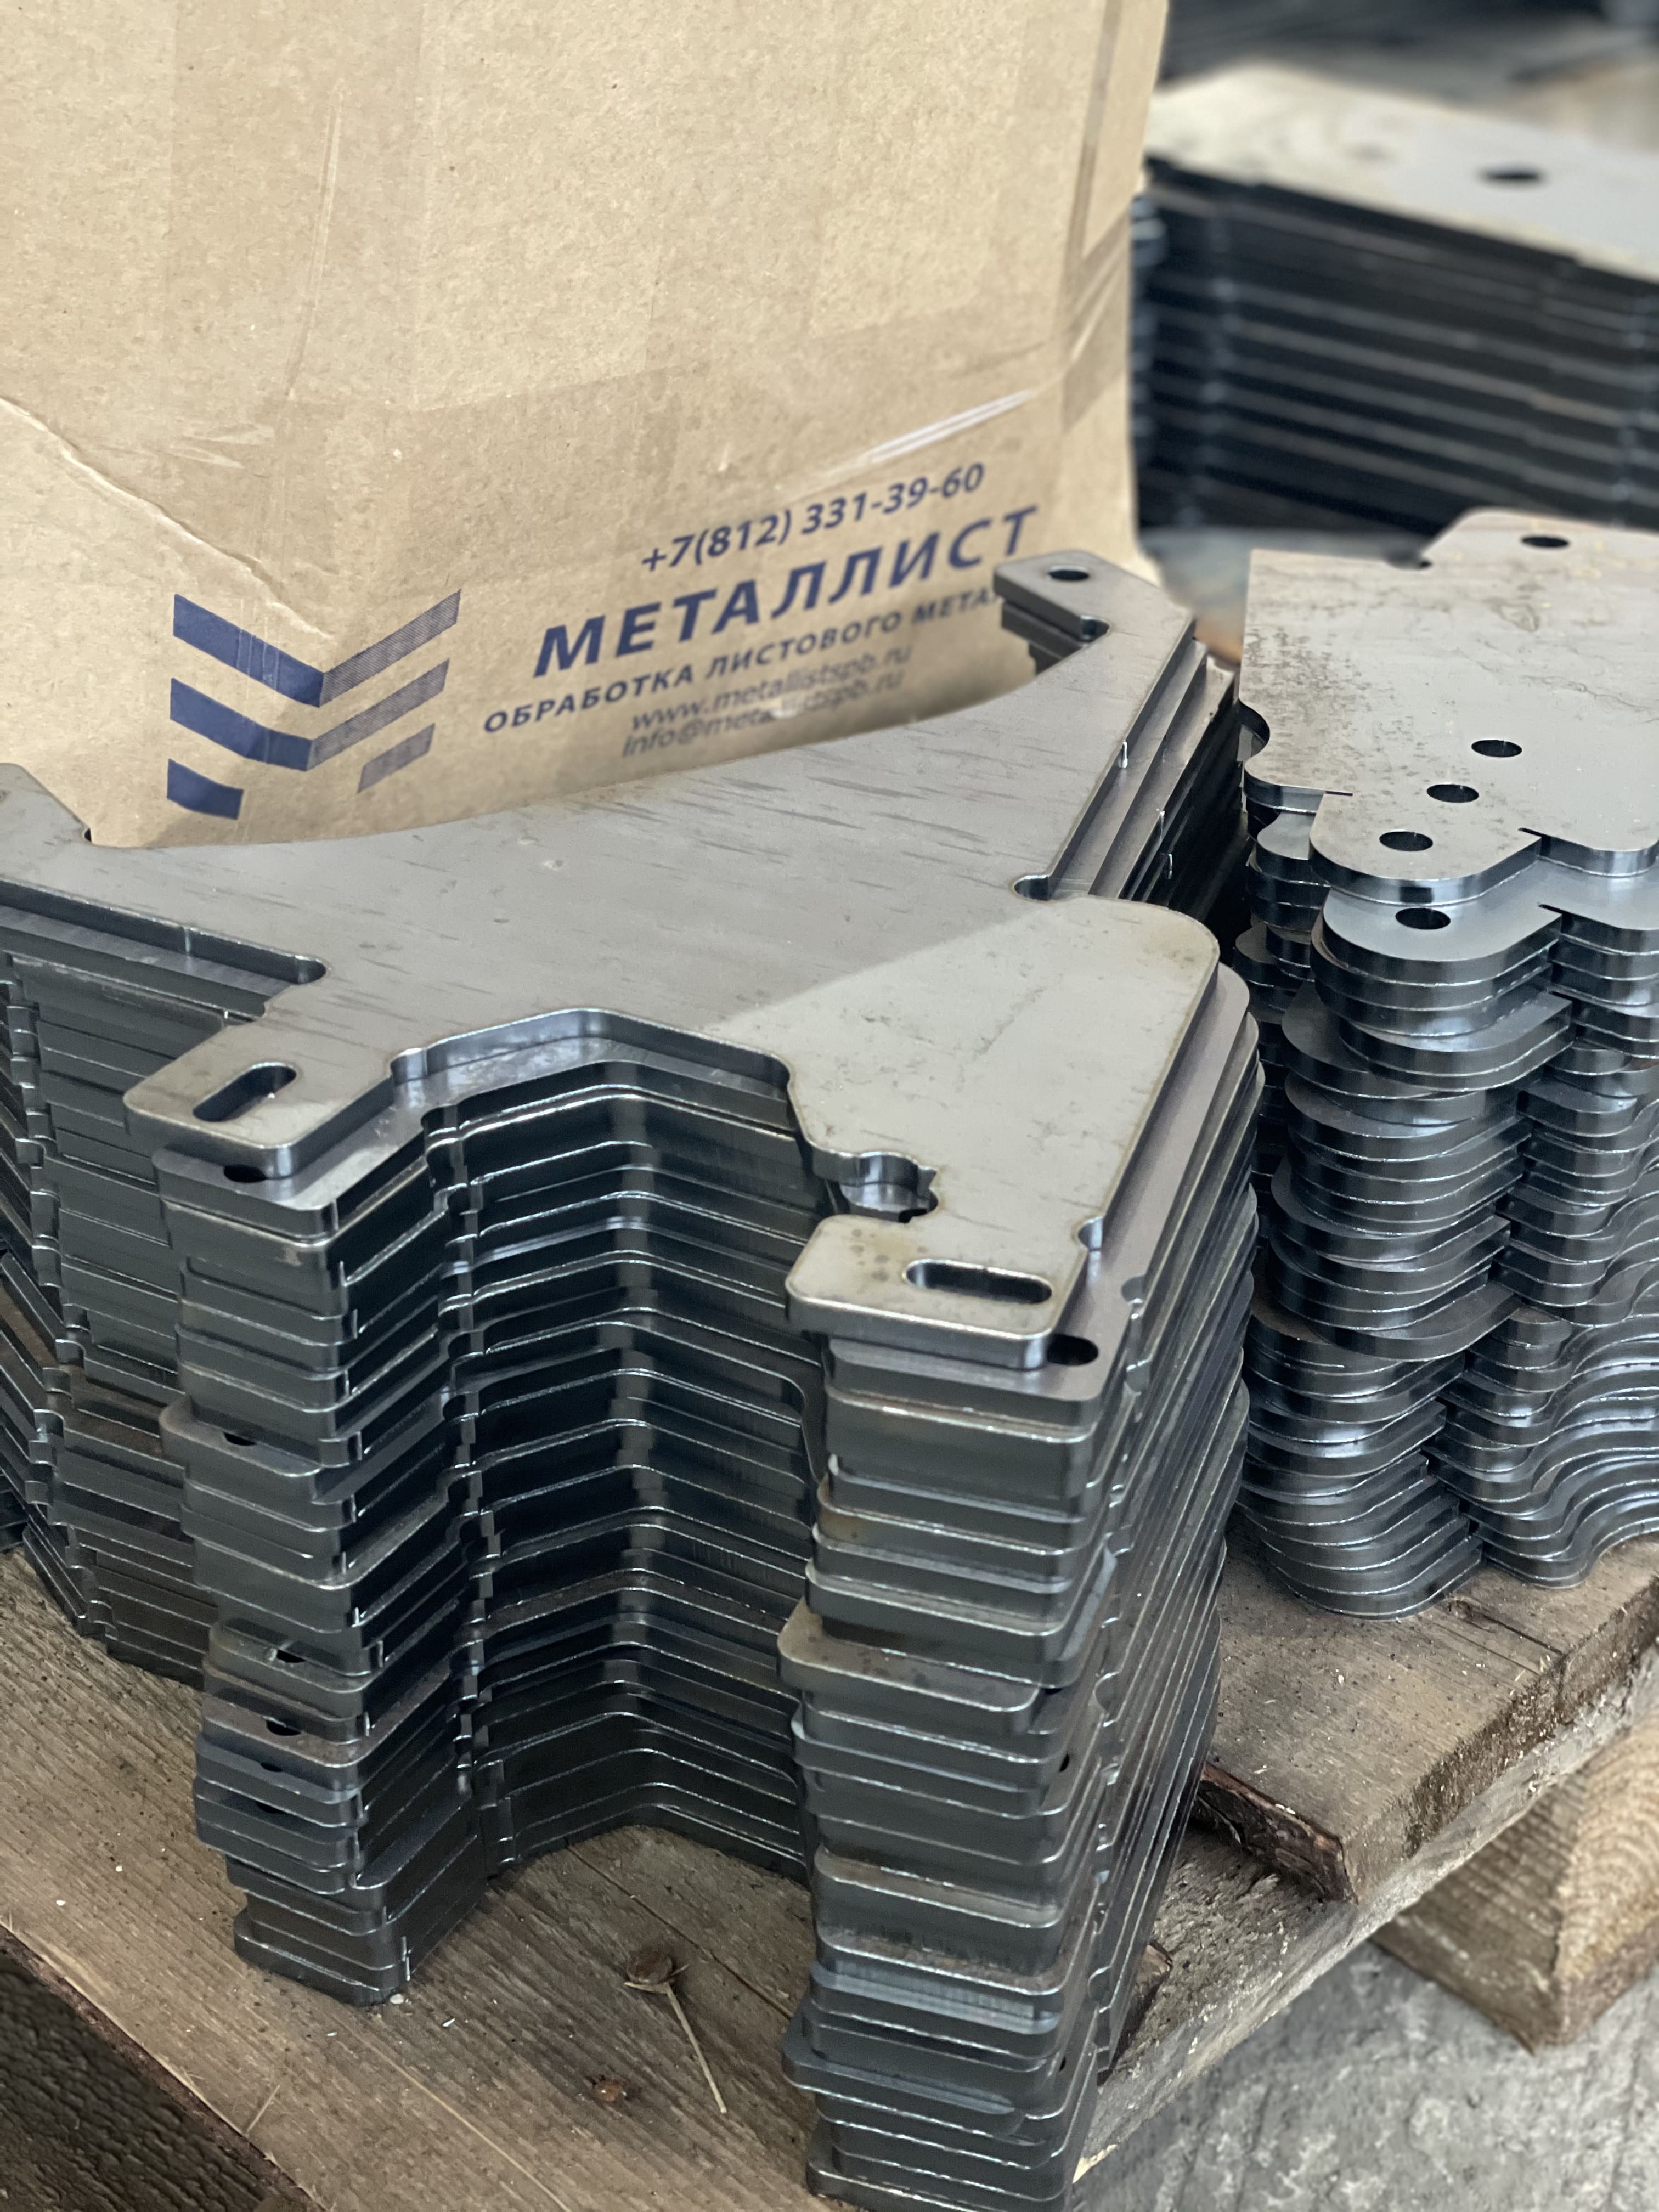 Пример продукции компании металлист сделанной в компании Металлист